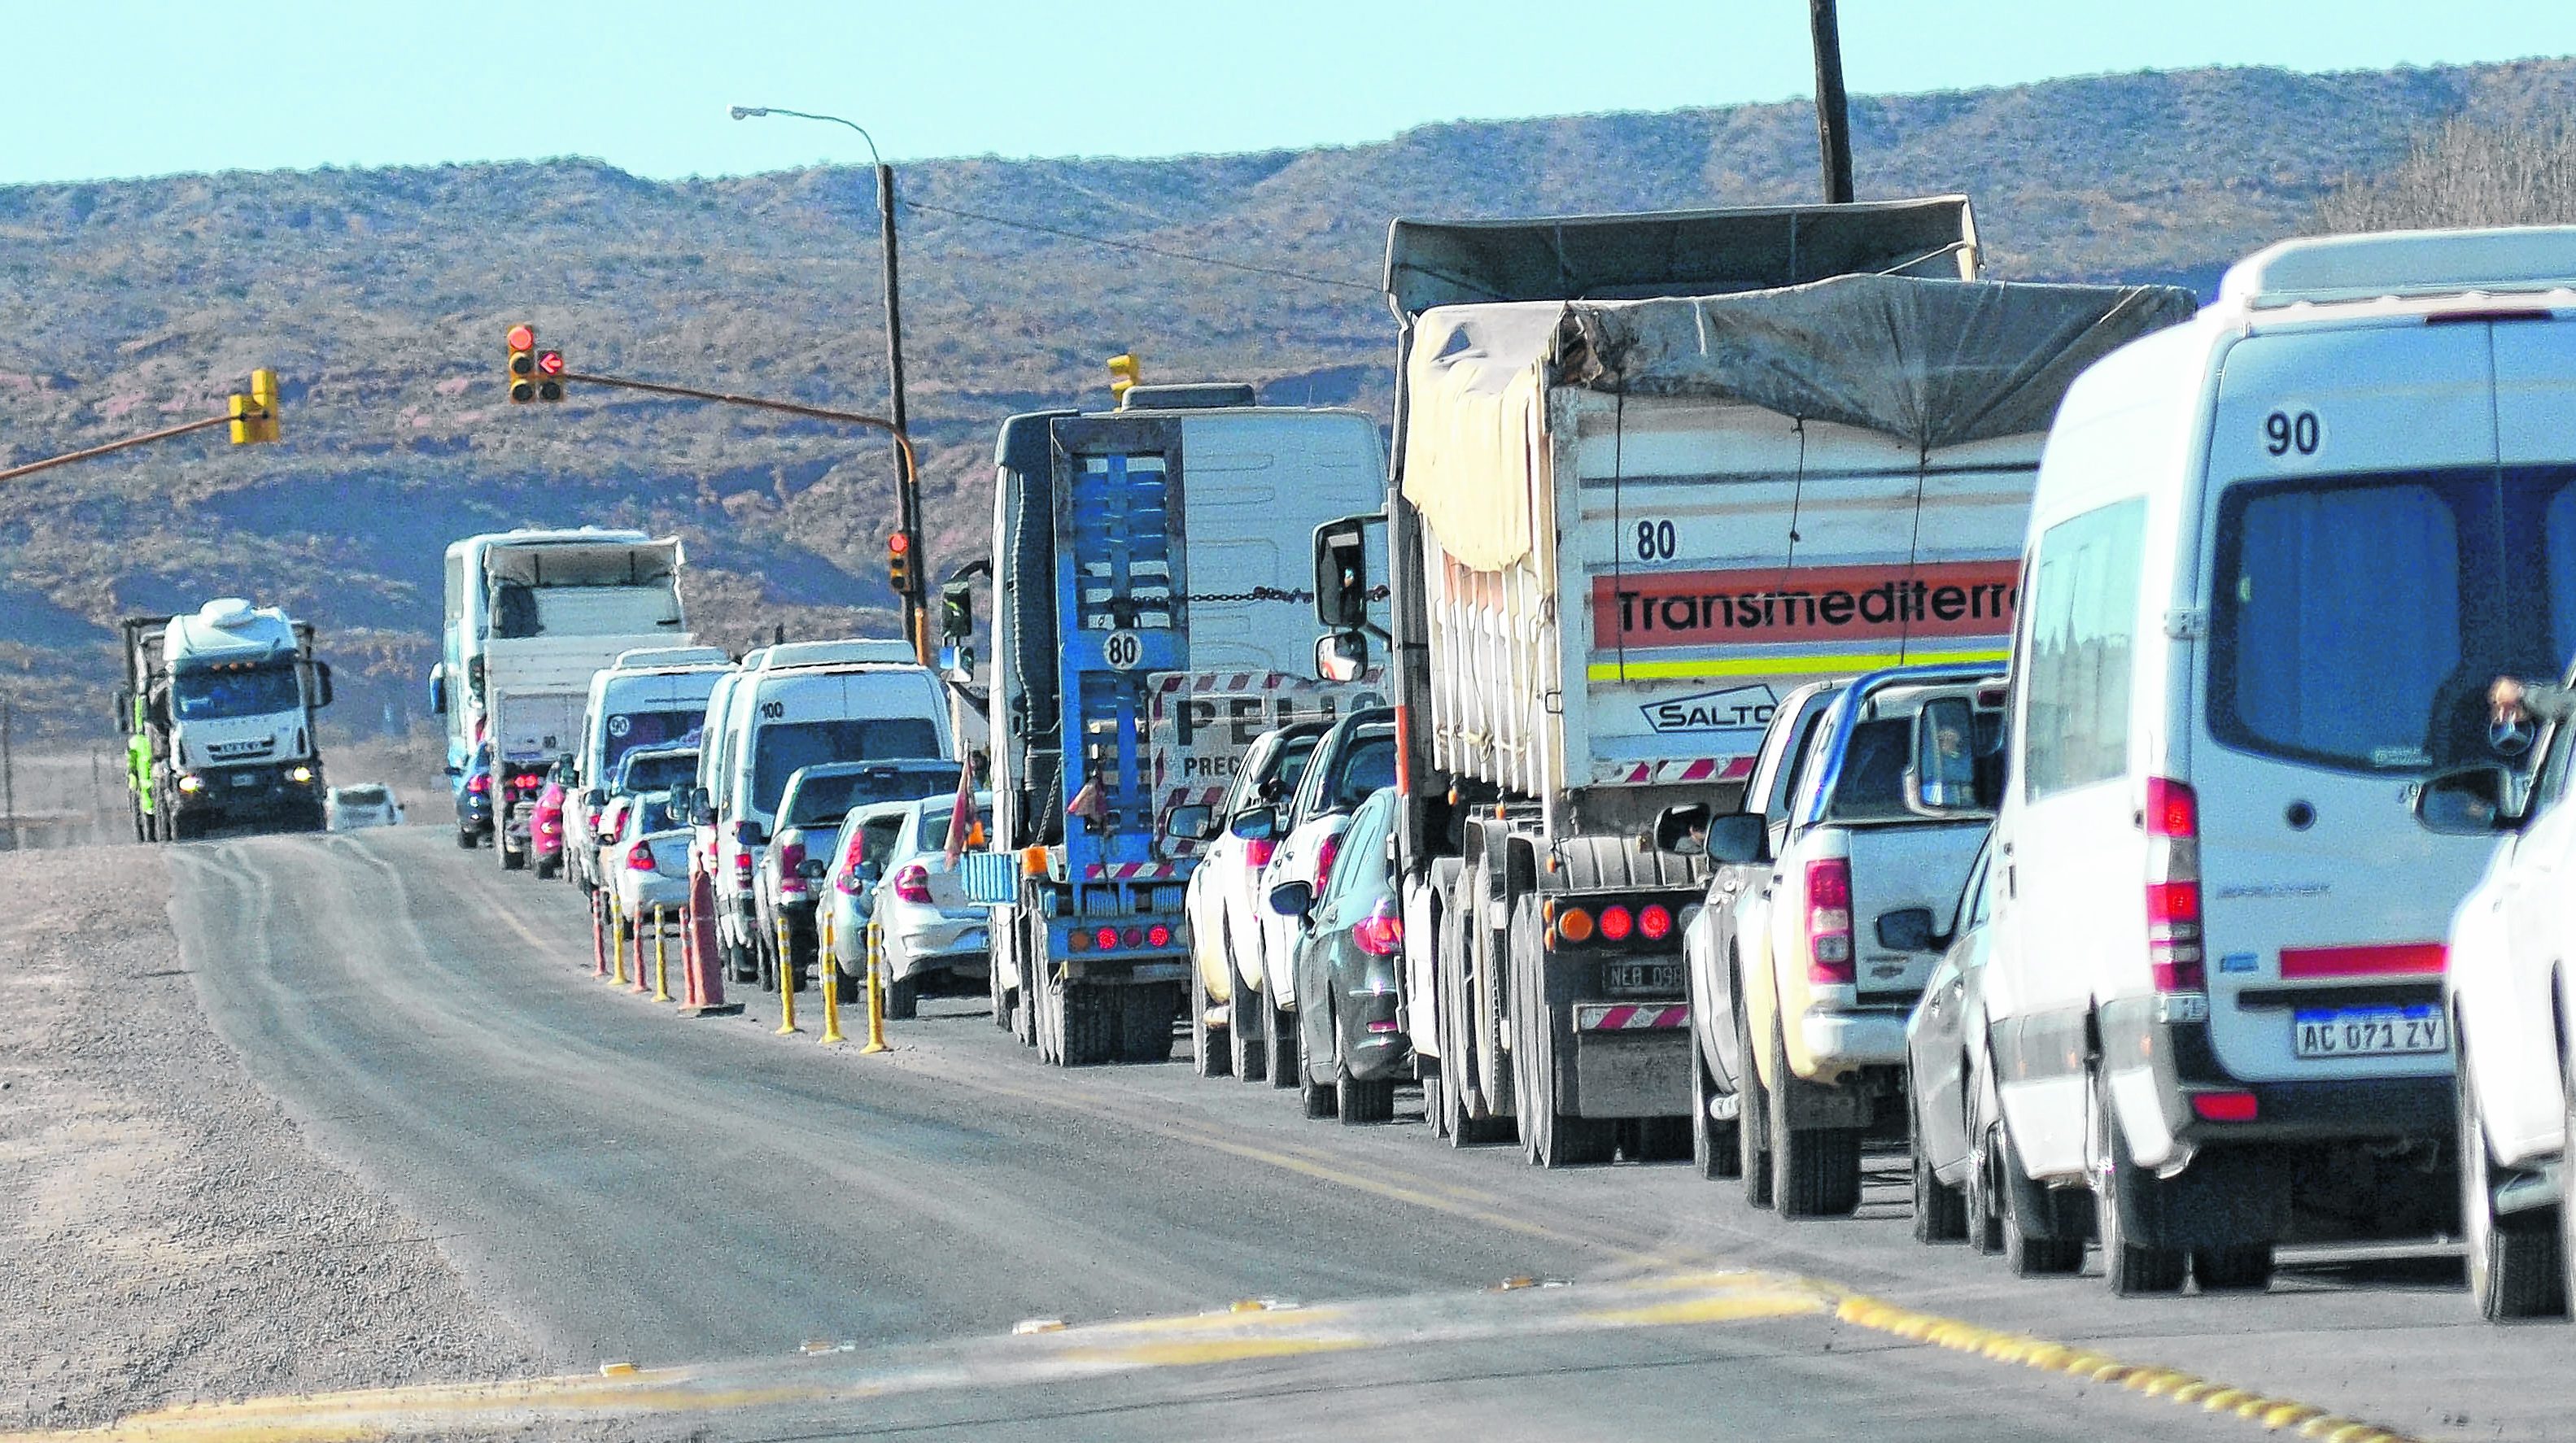 Camiones, colectivos y camionetas son la mayoría de los vehículos que circulan diariamente.